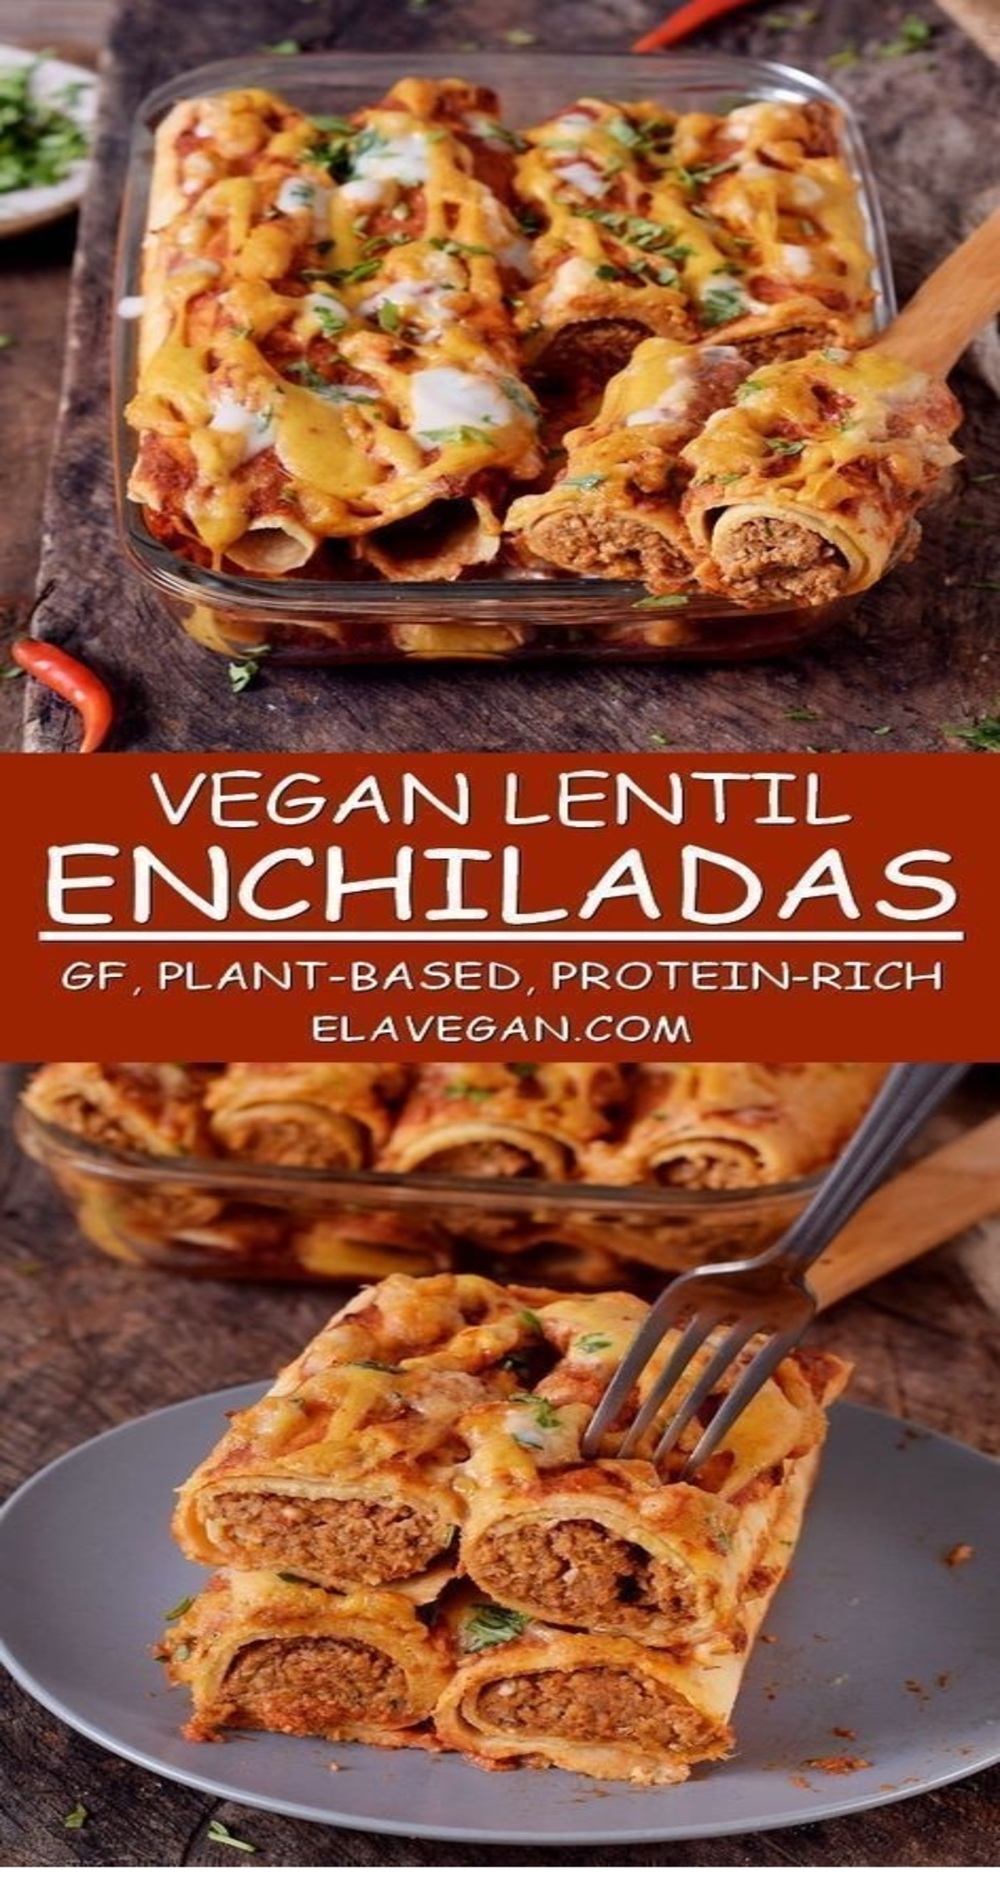 Vegan enchiladas